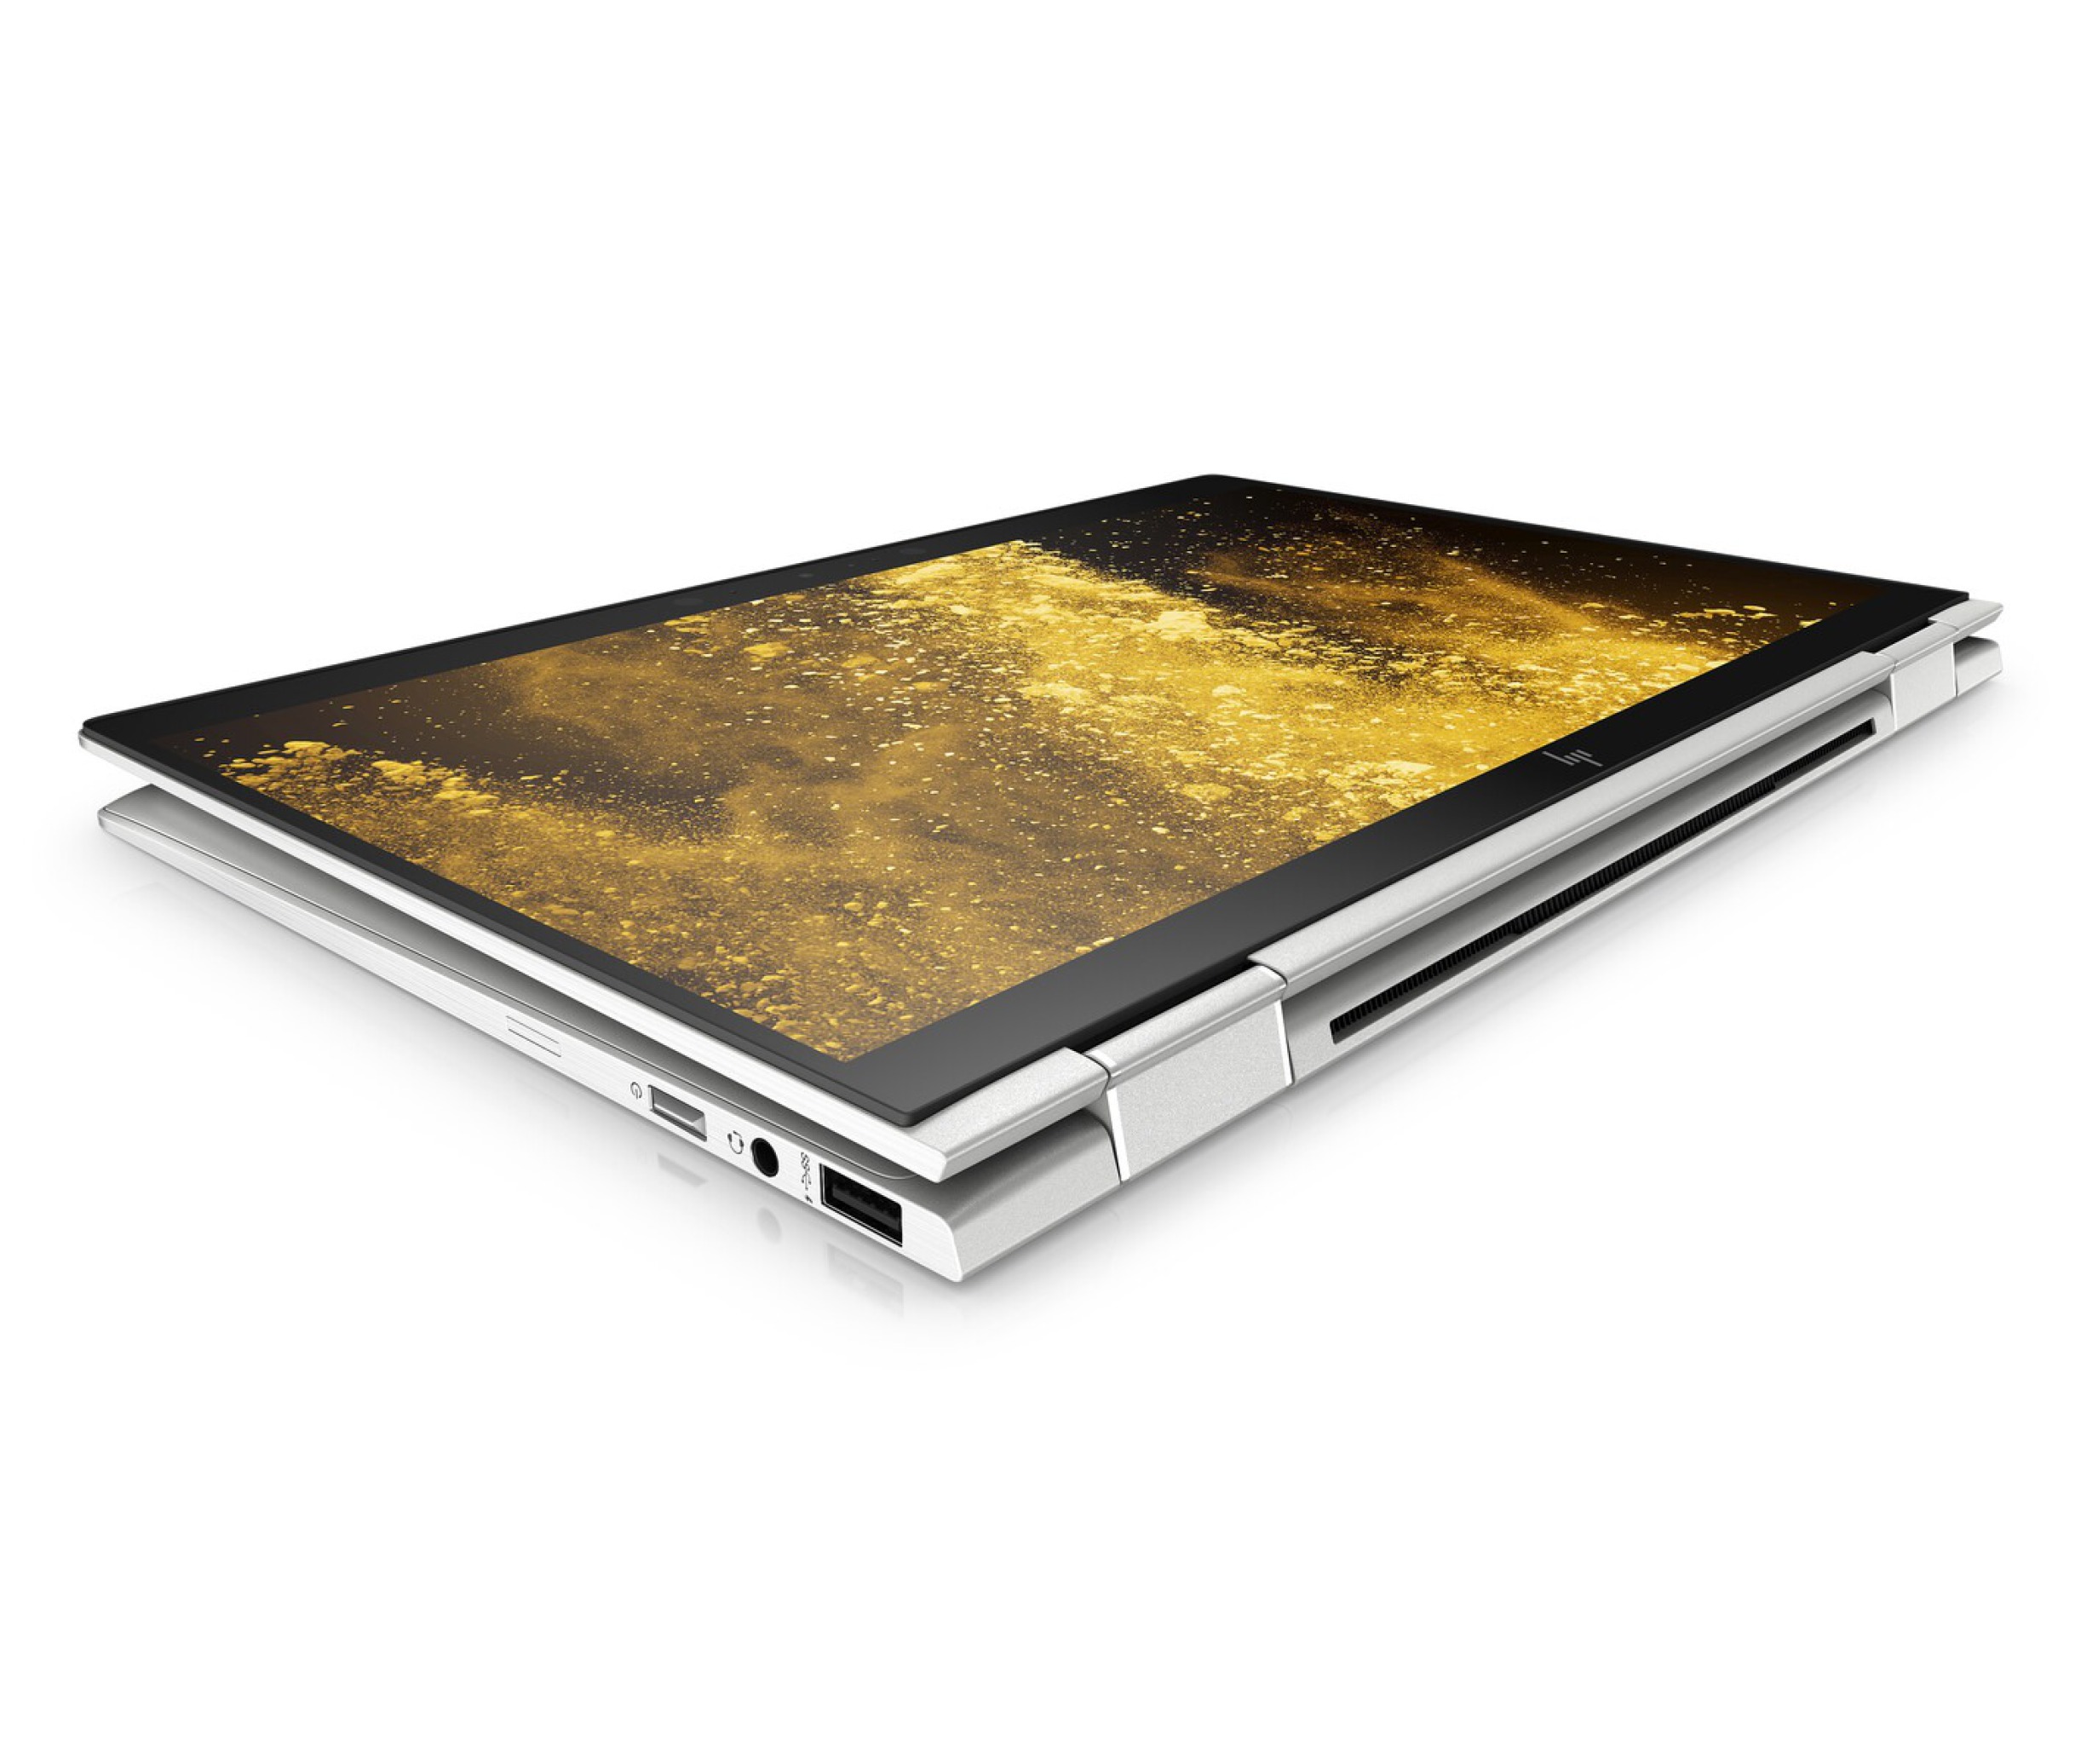  خرید لپ تاپ اچ پی HP EliteBook x360 1030 G4 | خرید لپ تاپ 360 درجه لمسی اچ پی |لاکچری لپ تاپ 